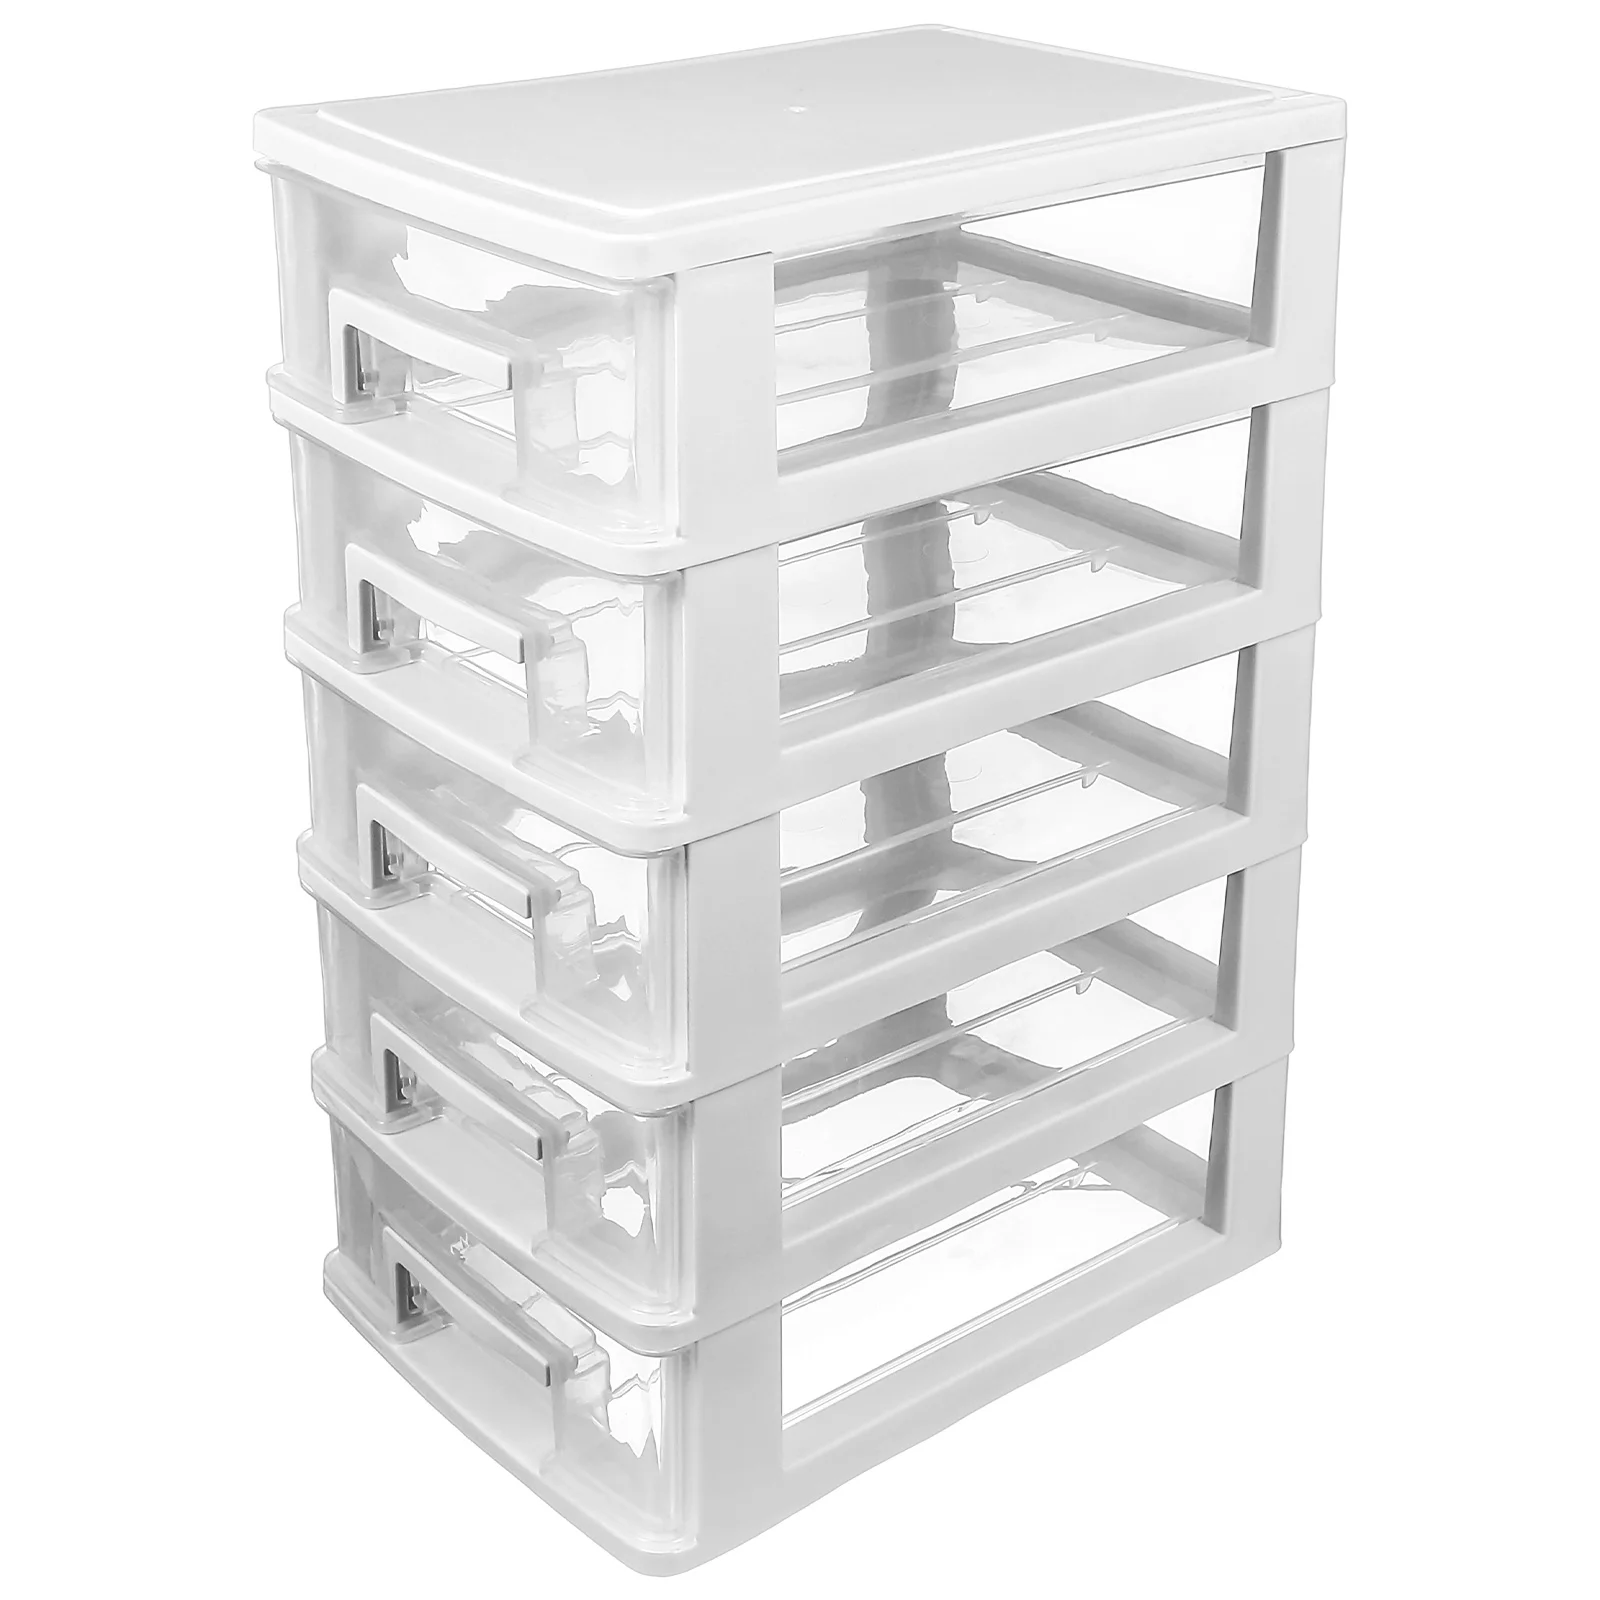 

5- storage bin layer storage cabinet drawer type closet desktop sundries container closet organizer holder for home drawers